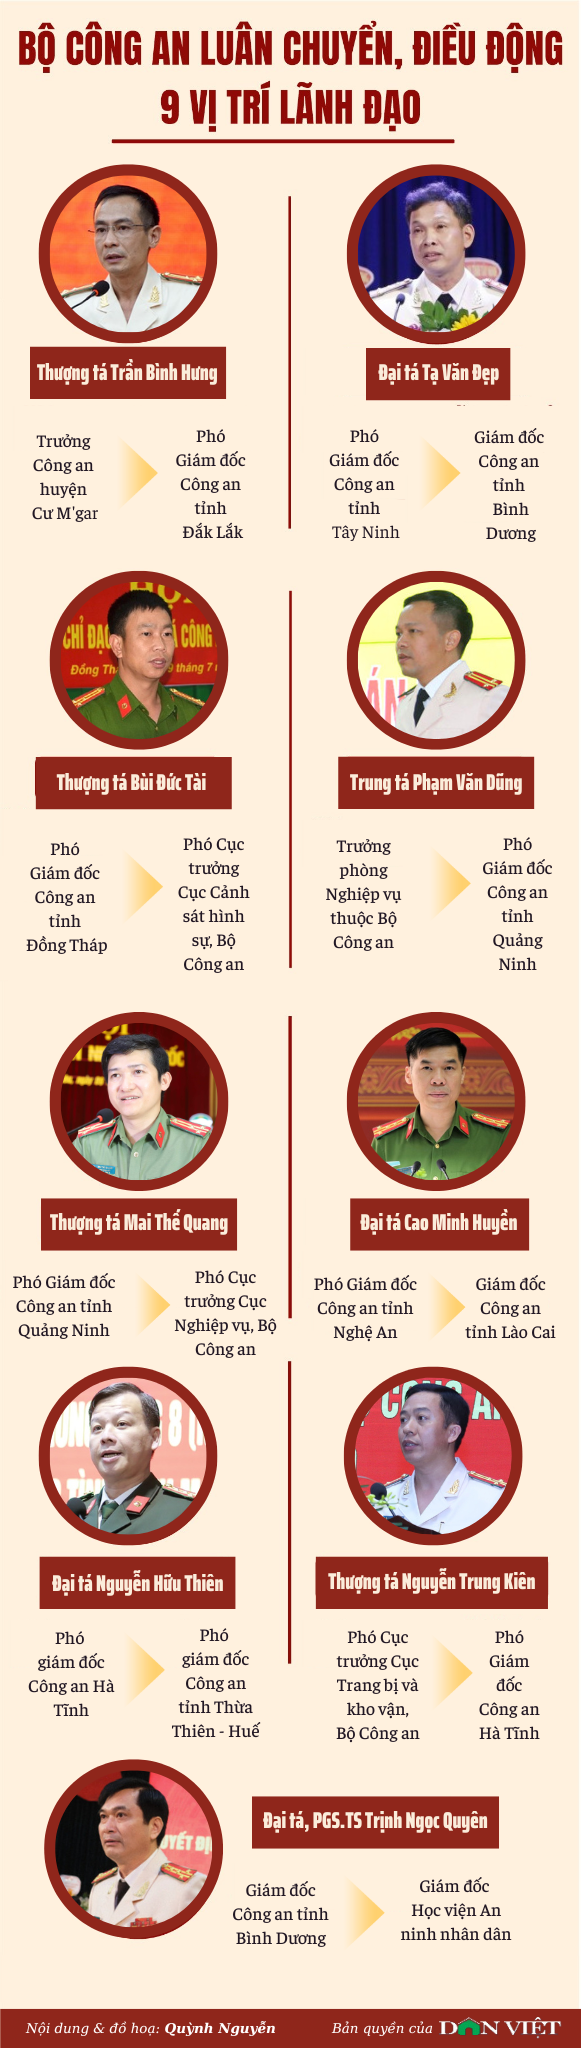 Infographic: Bộ Công an luân chuyển, điều động 9 vị trí lãnh đạo - Ảnh 1.